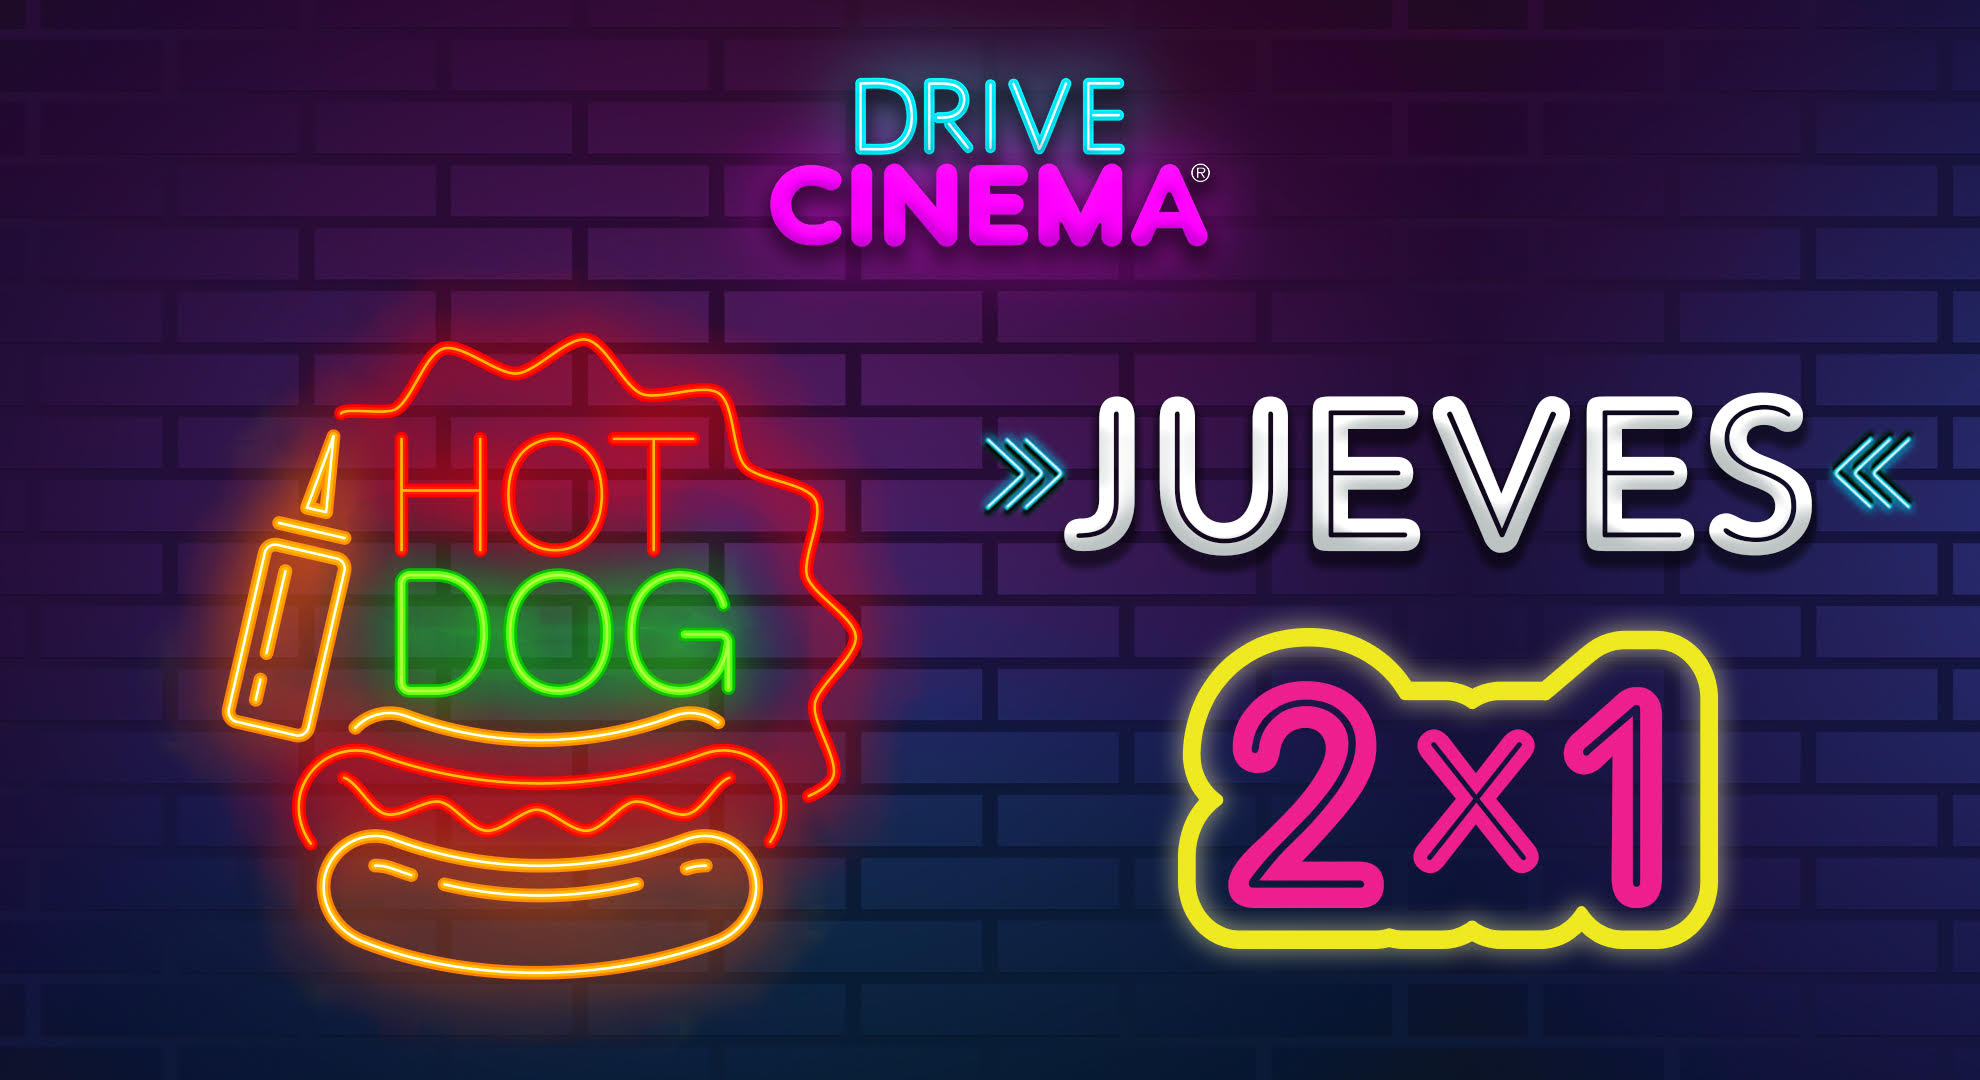 Hot Dog Jueves 2 x 1